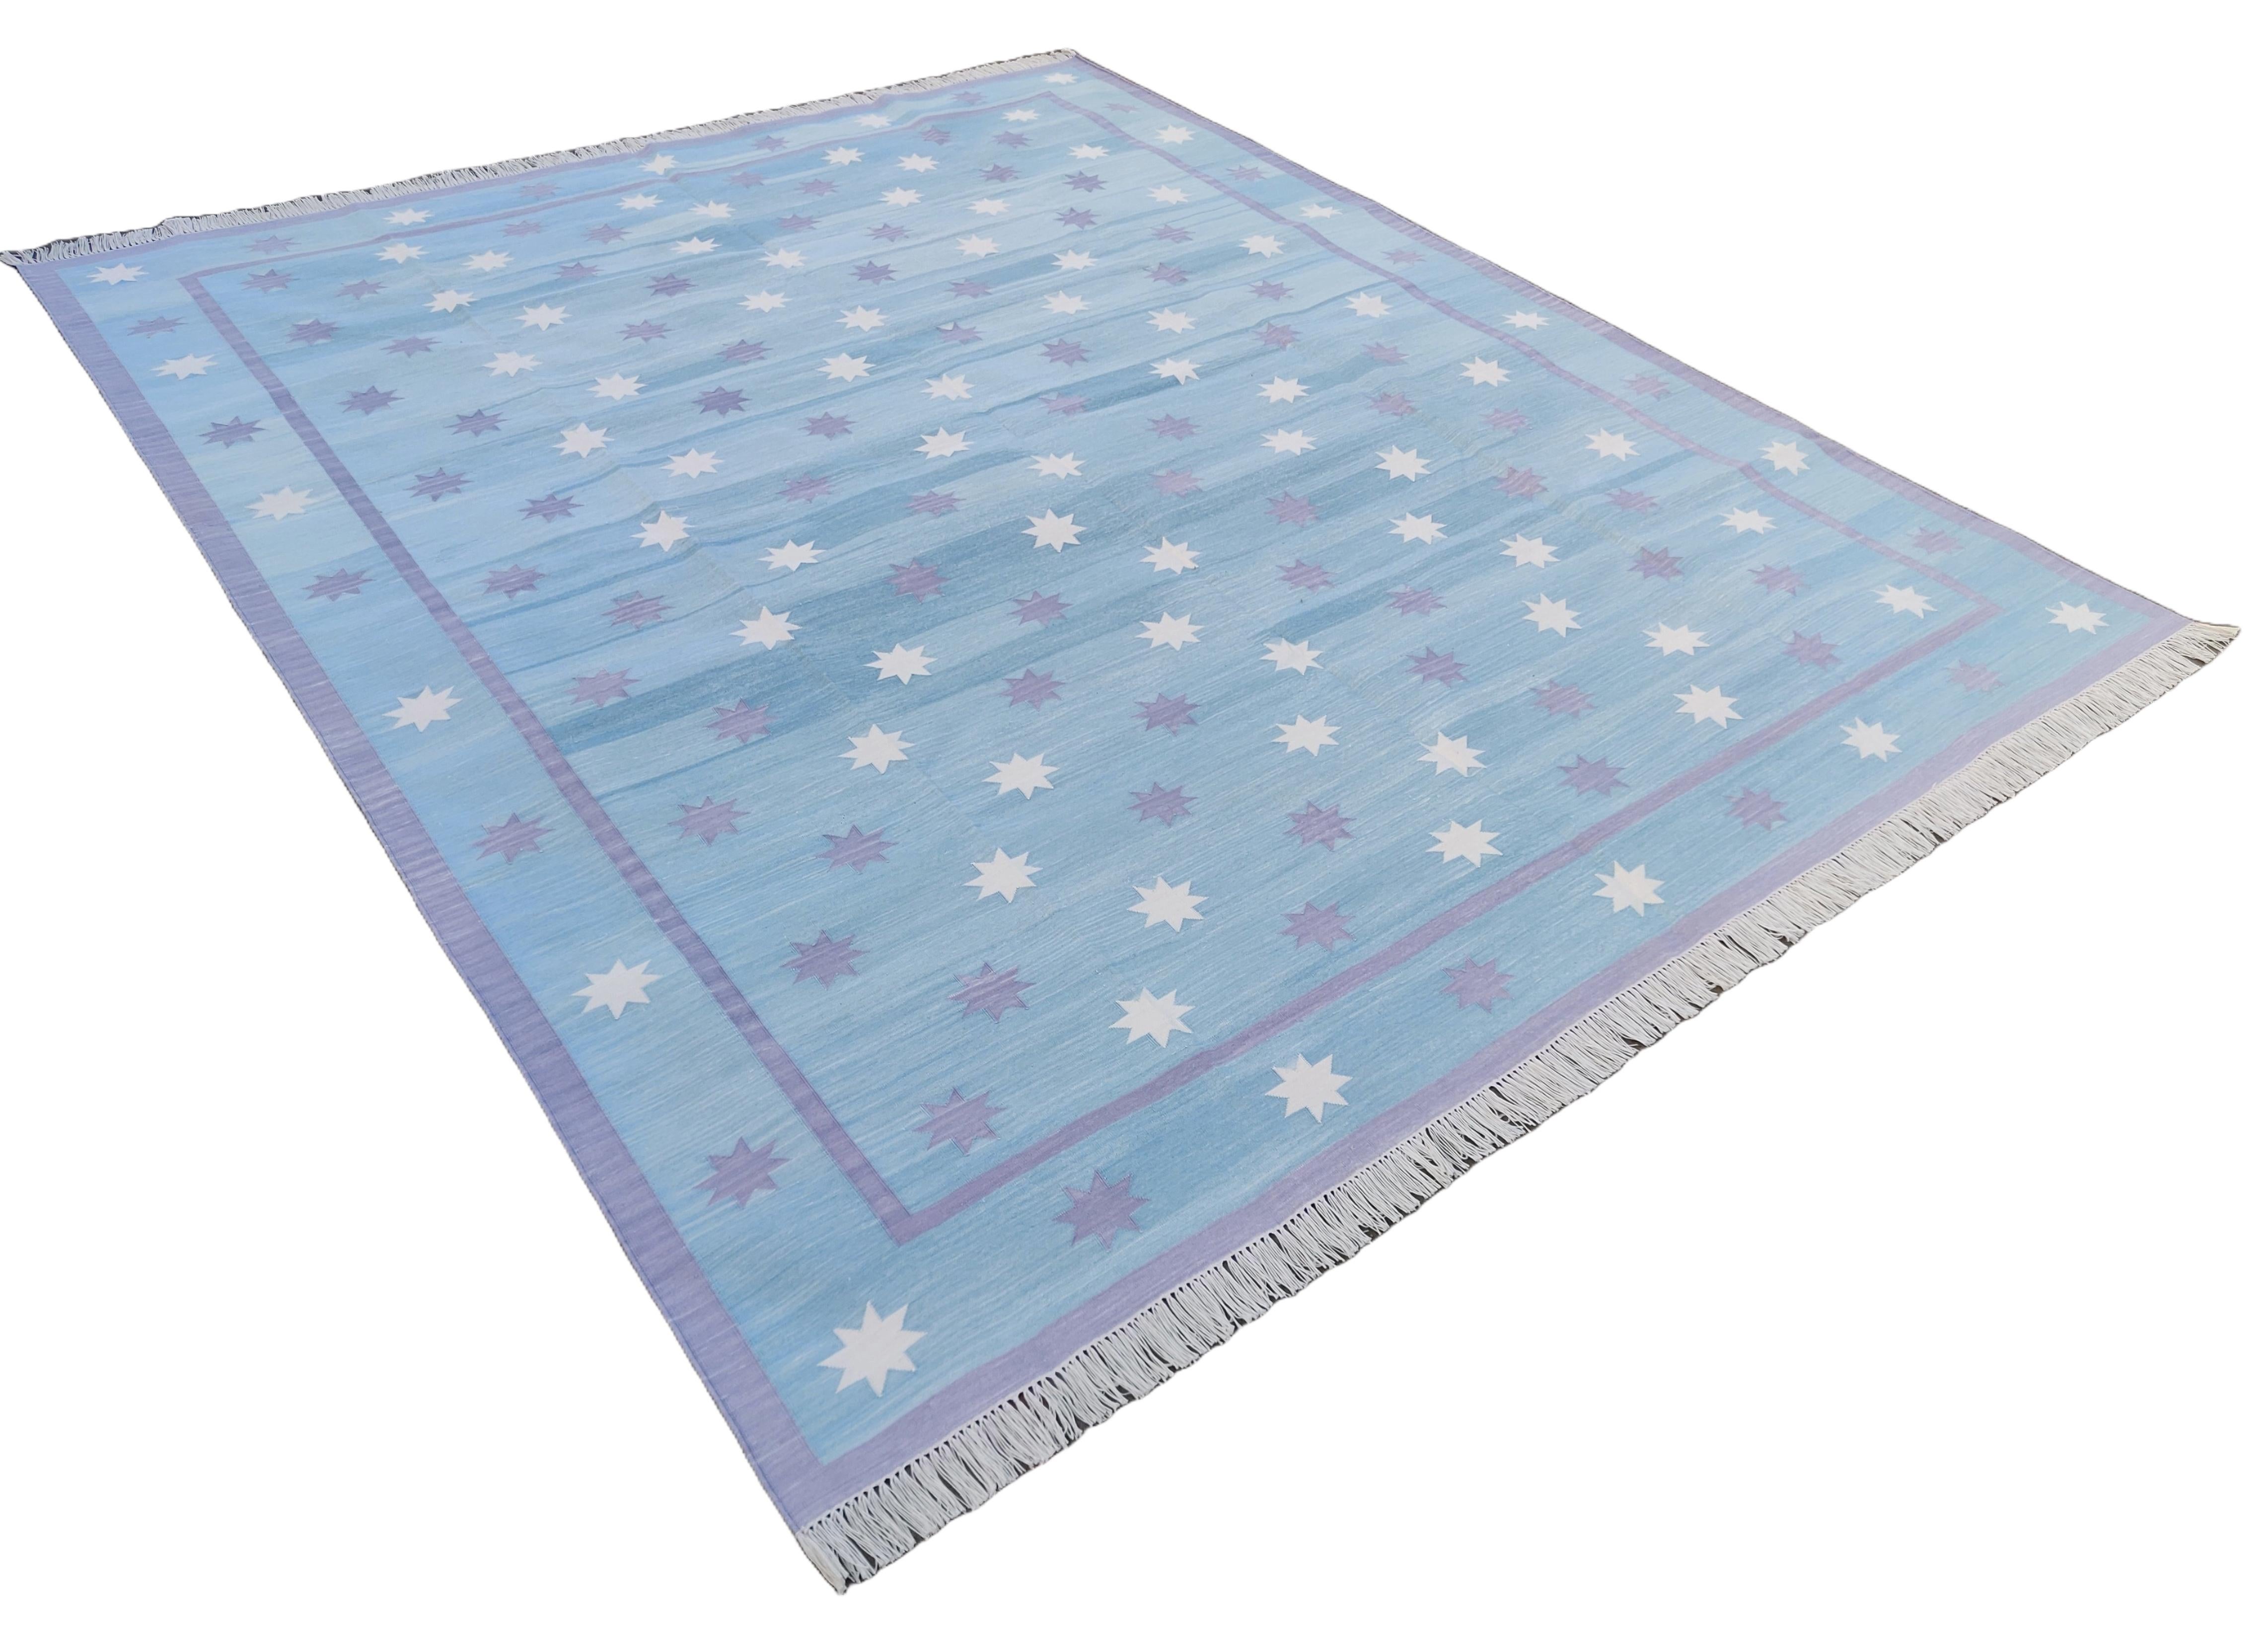 Baumwolle pflanzlich gefärbt Reversible Sky Blue, Lavendel & Creme Indian Star Geometric Rug - 8'x10'
Diese speziellen flachgewebten Dhurries werden aus 15-fachem Garn aus 100% Baumwolle handgewebt. Aufgrund der speziellen Fertigungstechniken, die